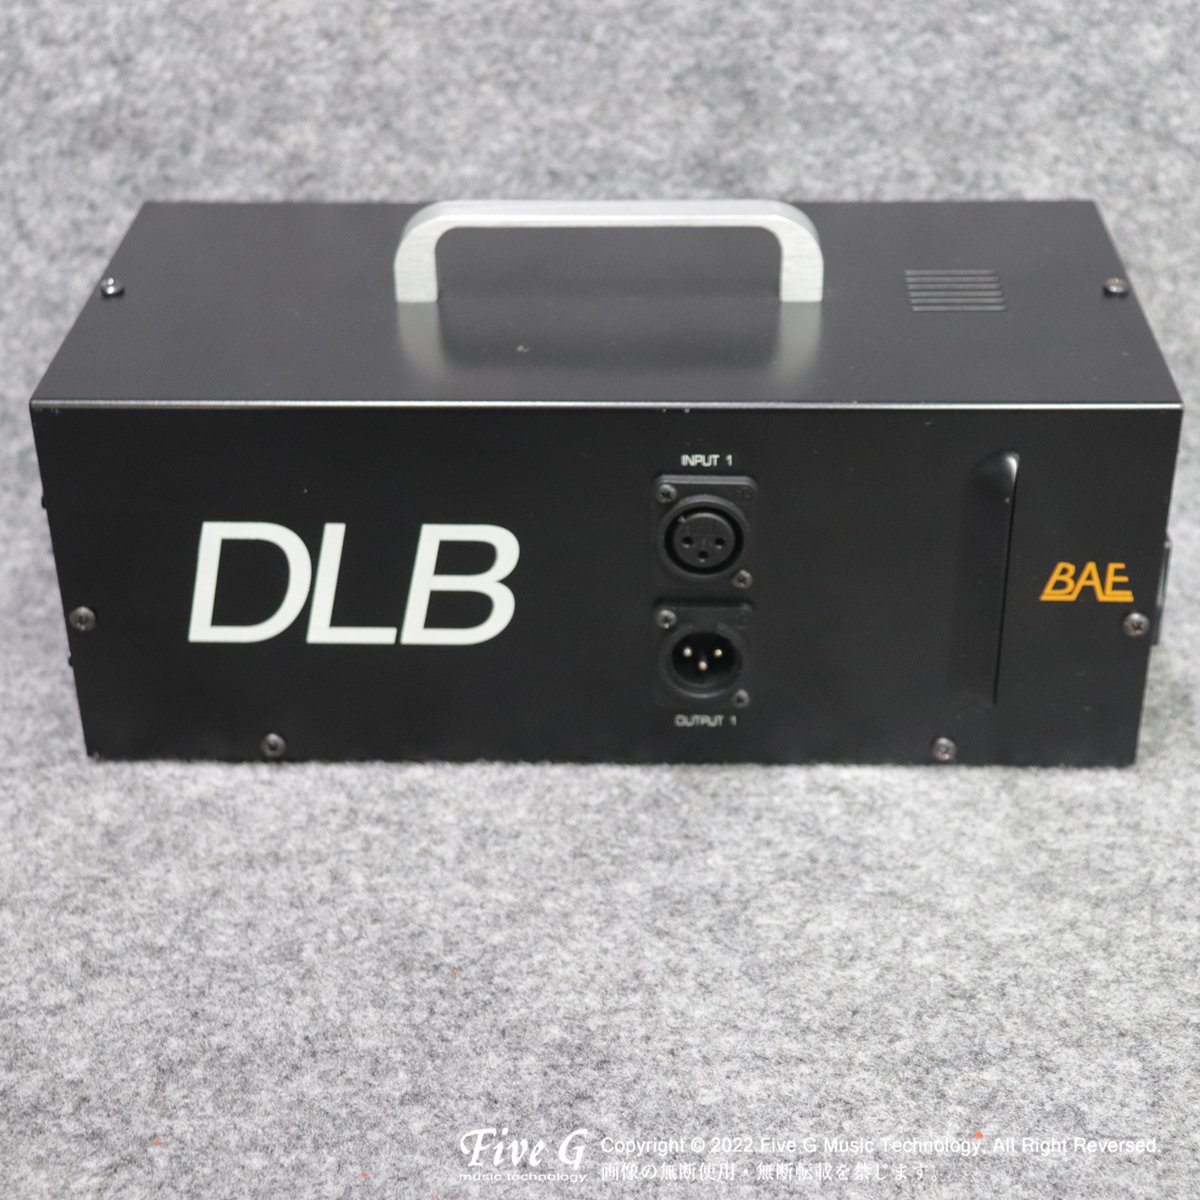 BAE Audio | DLB【デモ機処分特価】| シンセサイザー / リズムマシン | Five G music technology